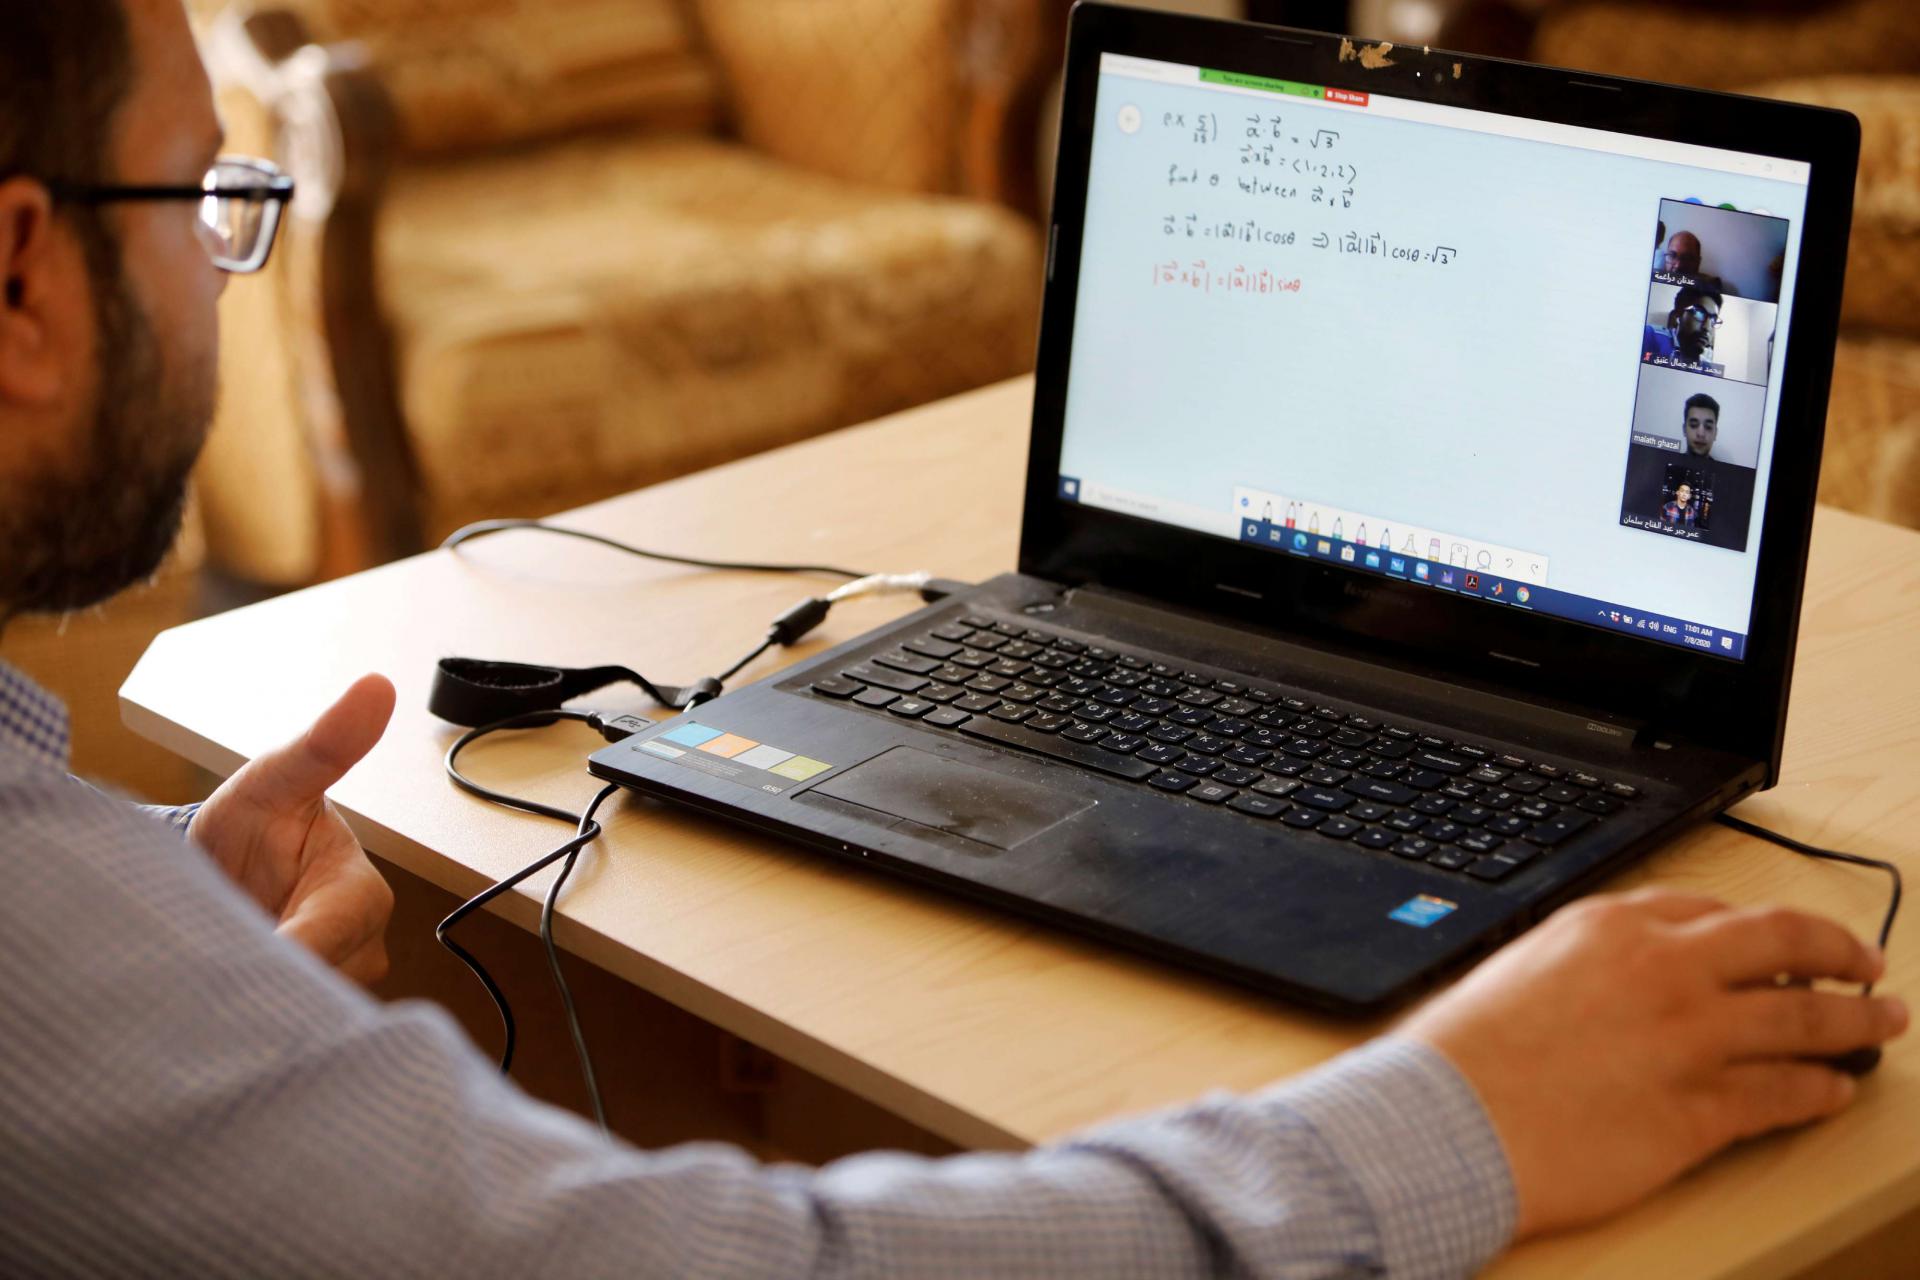 أستاذ مساعد في الرياضيات في جامعة النجاح يلقي محاضرة عبر الإنترنت لطلابه في منزله في طوباس بالضفة الغربية